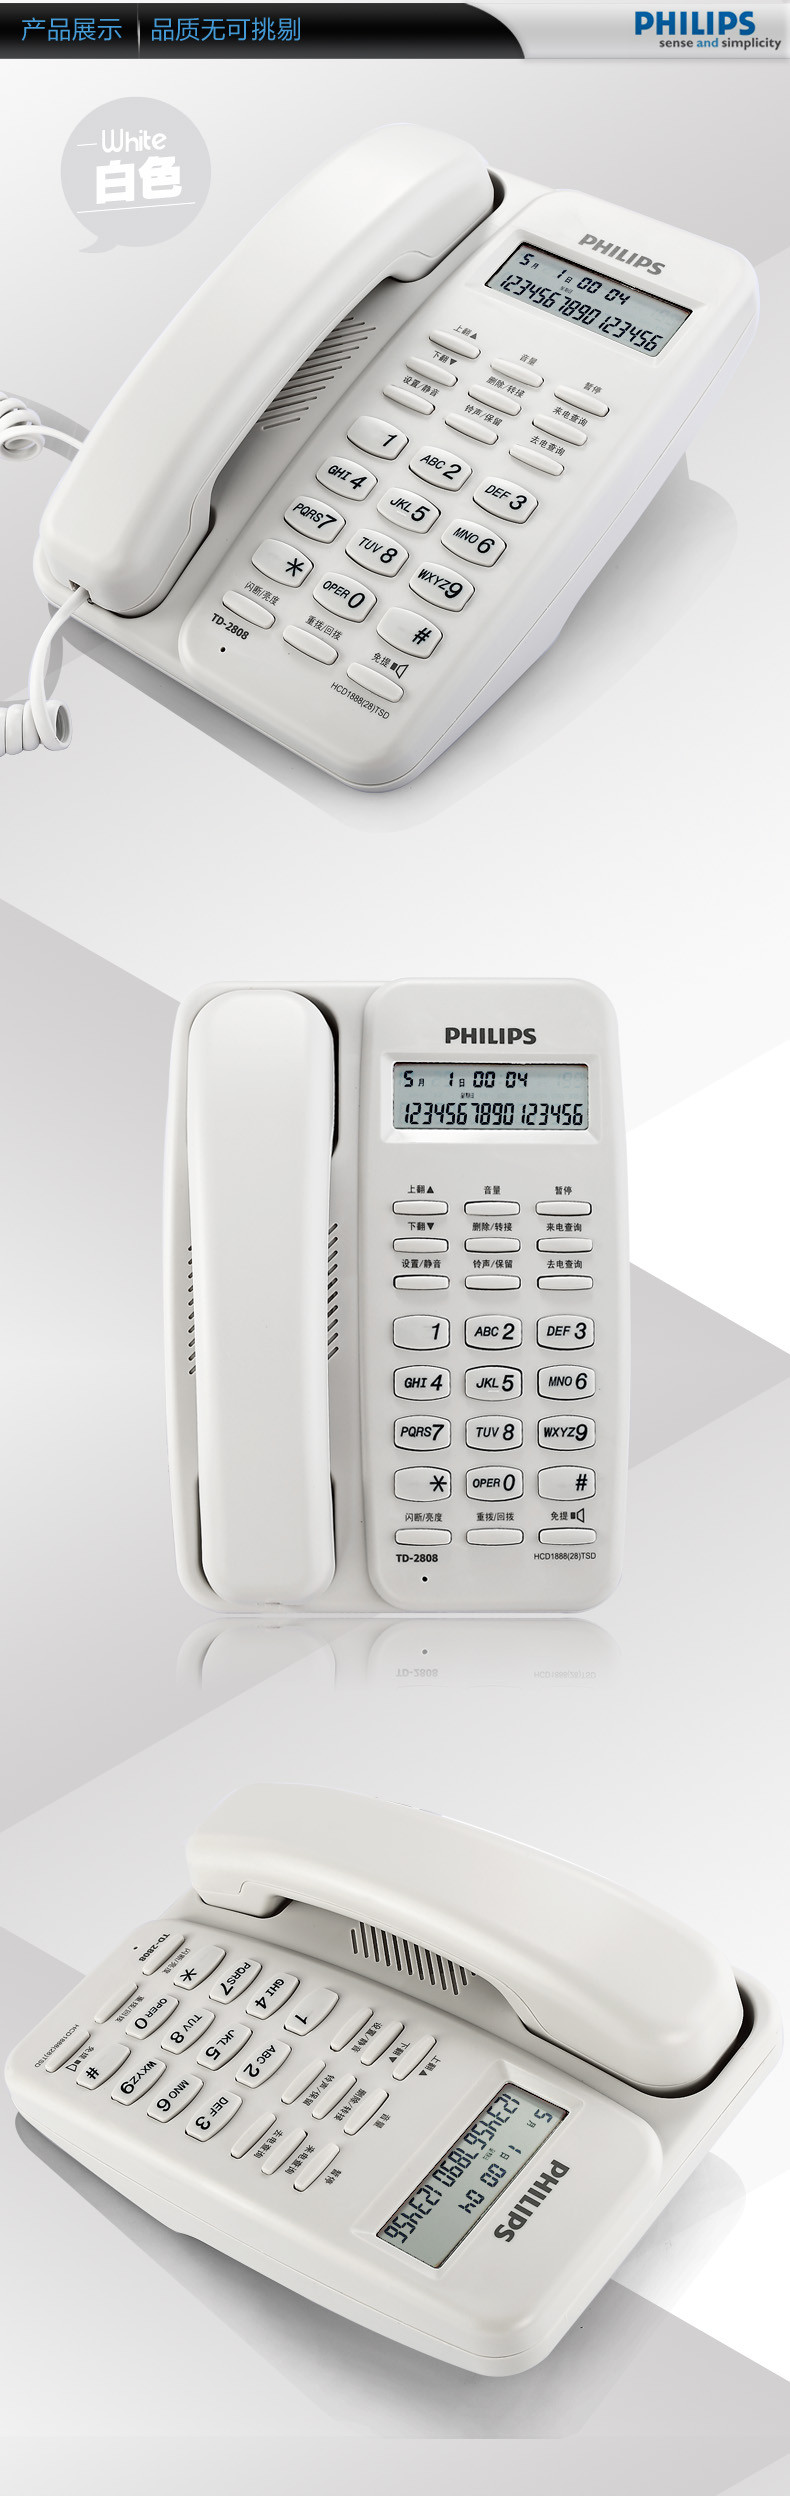 【苏宁专供】飞利浦(Philips)TD-2808 有绳话机 /普通家用/办公话机/来电显示/免电池/固定电话座机 (黑色)